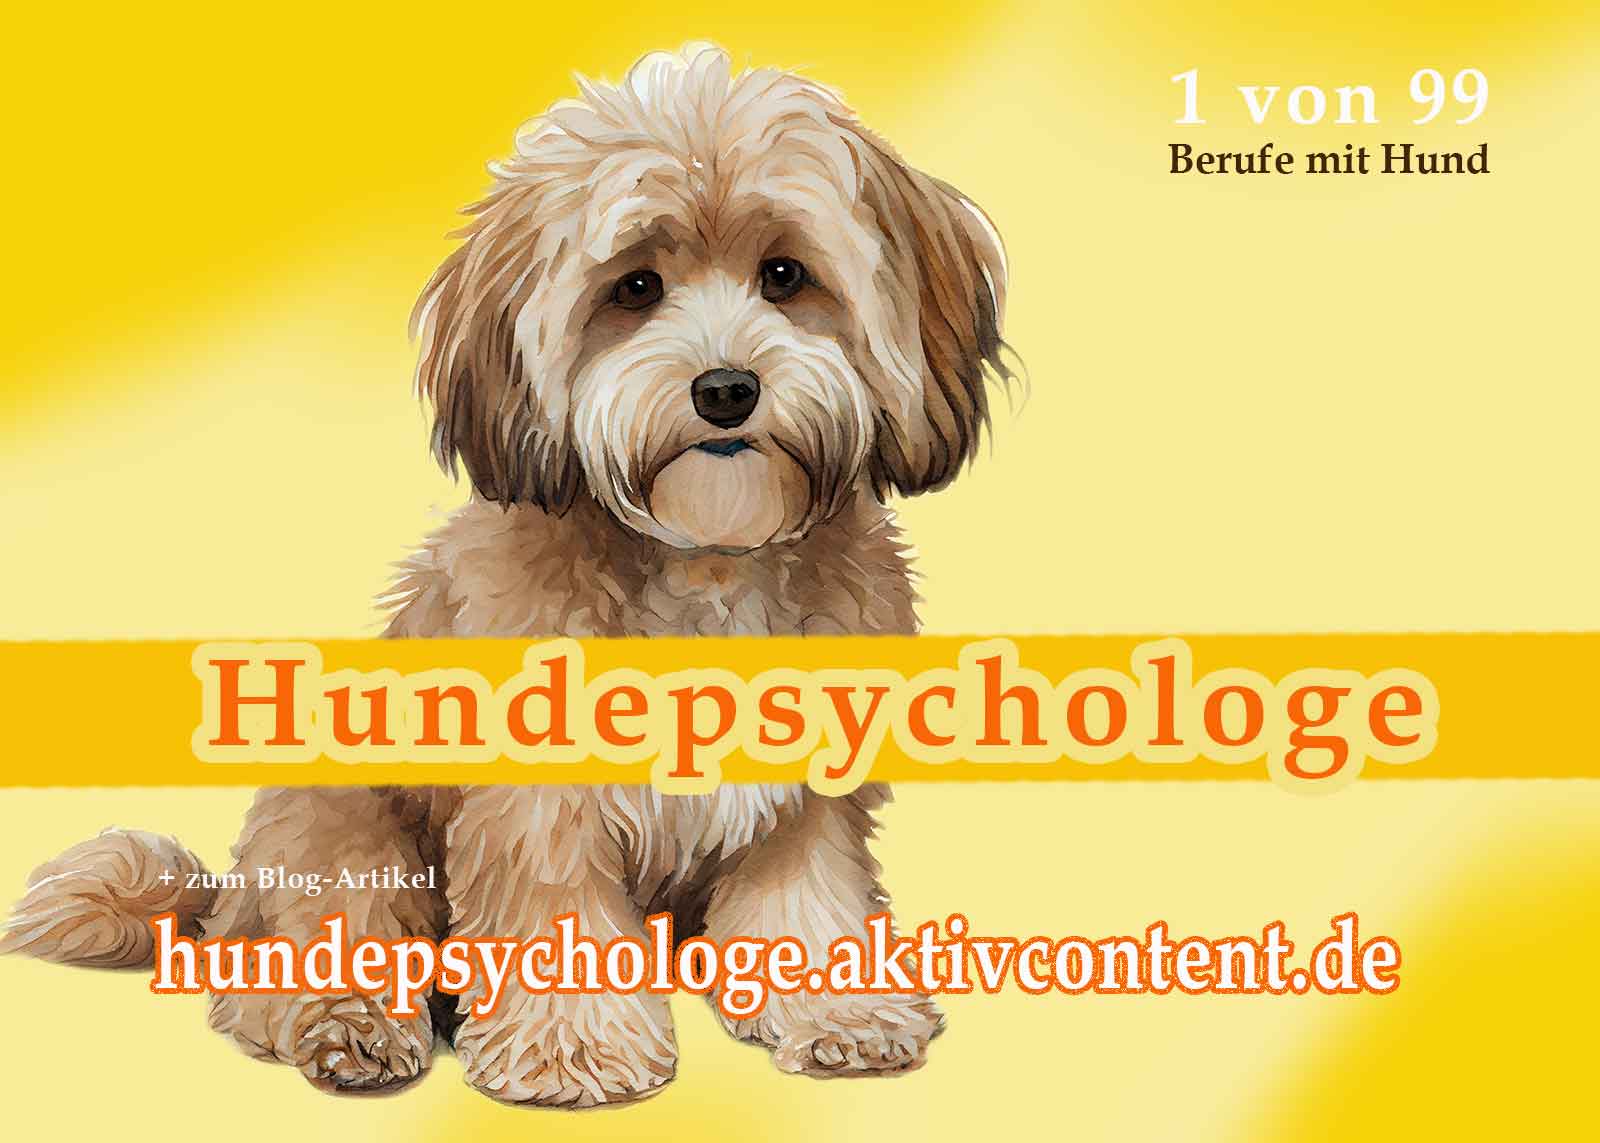 Hundepsychologe werden? Erfahre alles über den Beruf Hundepsychologe, das richtige Mindset und weitere spannende Berufe mit Hund – verwirkliche deine Leidenschaft!